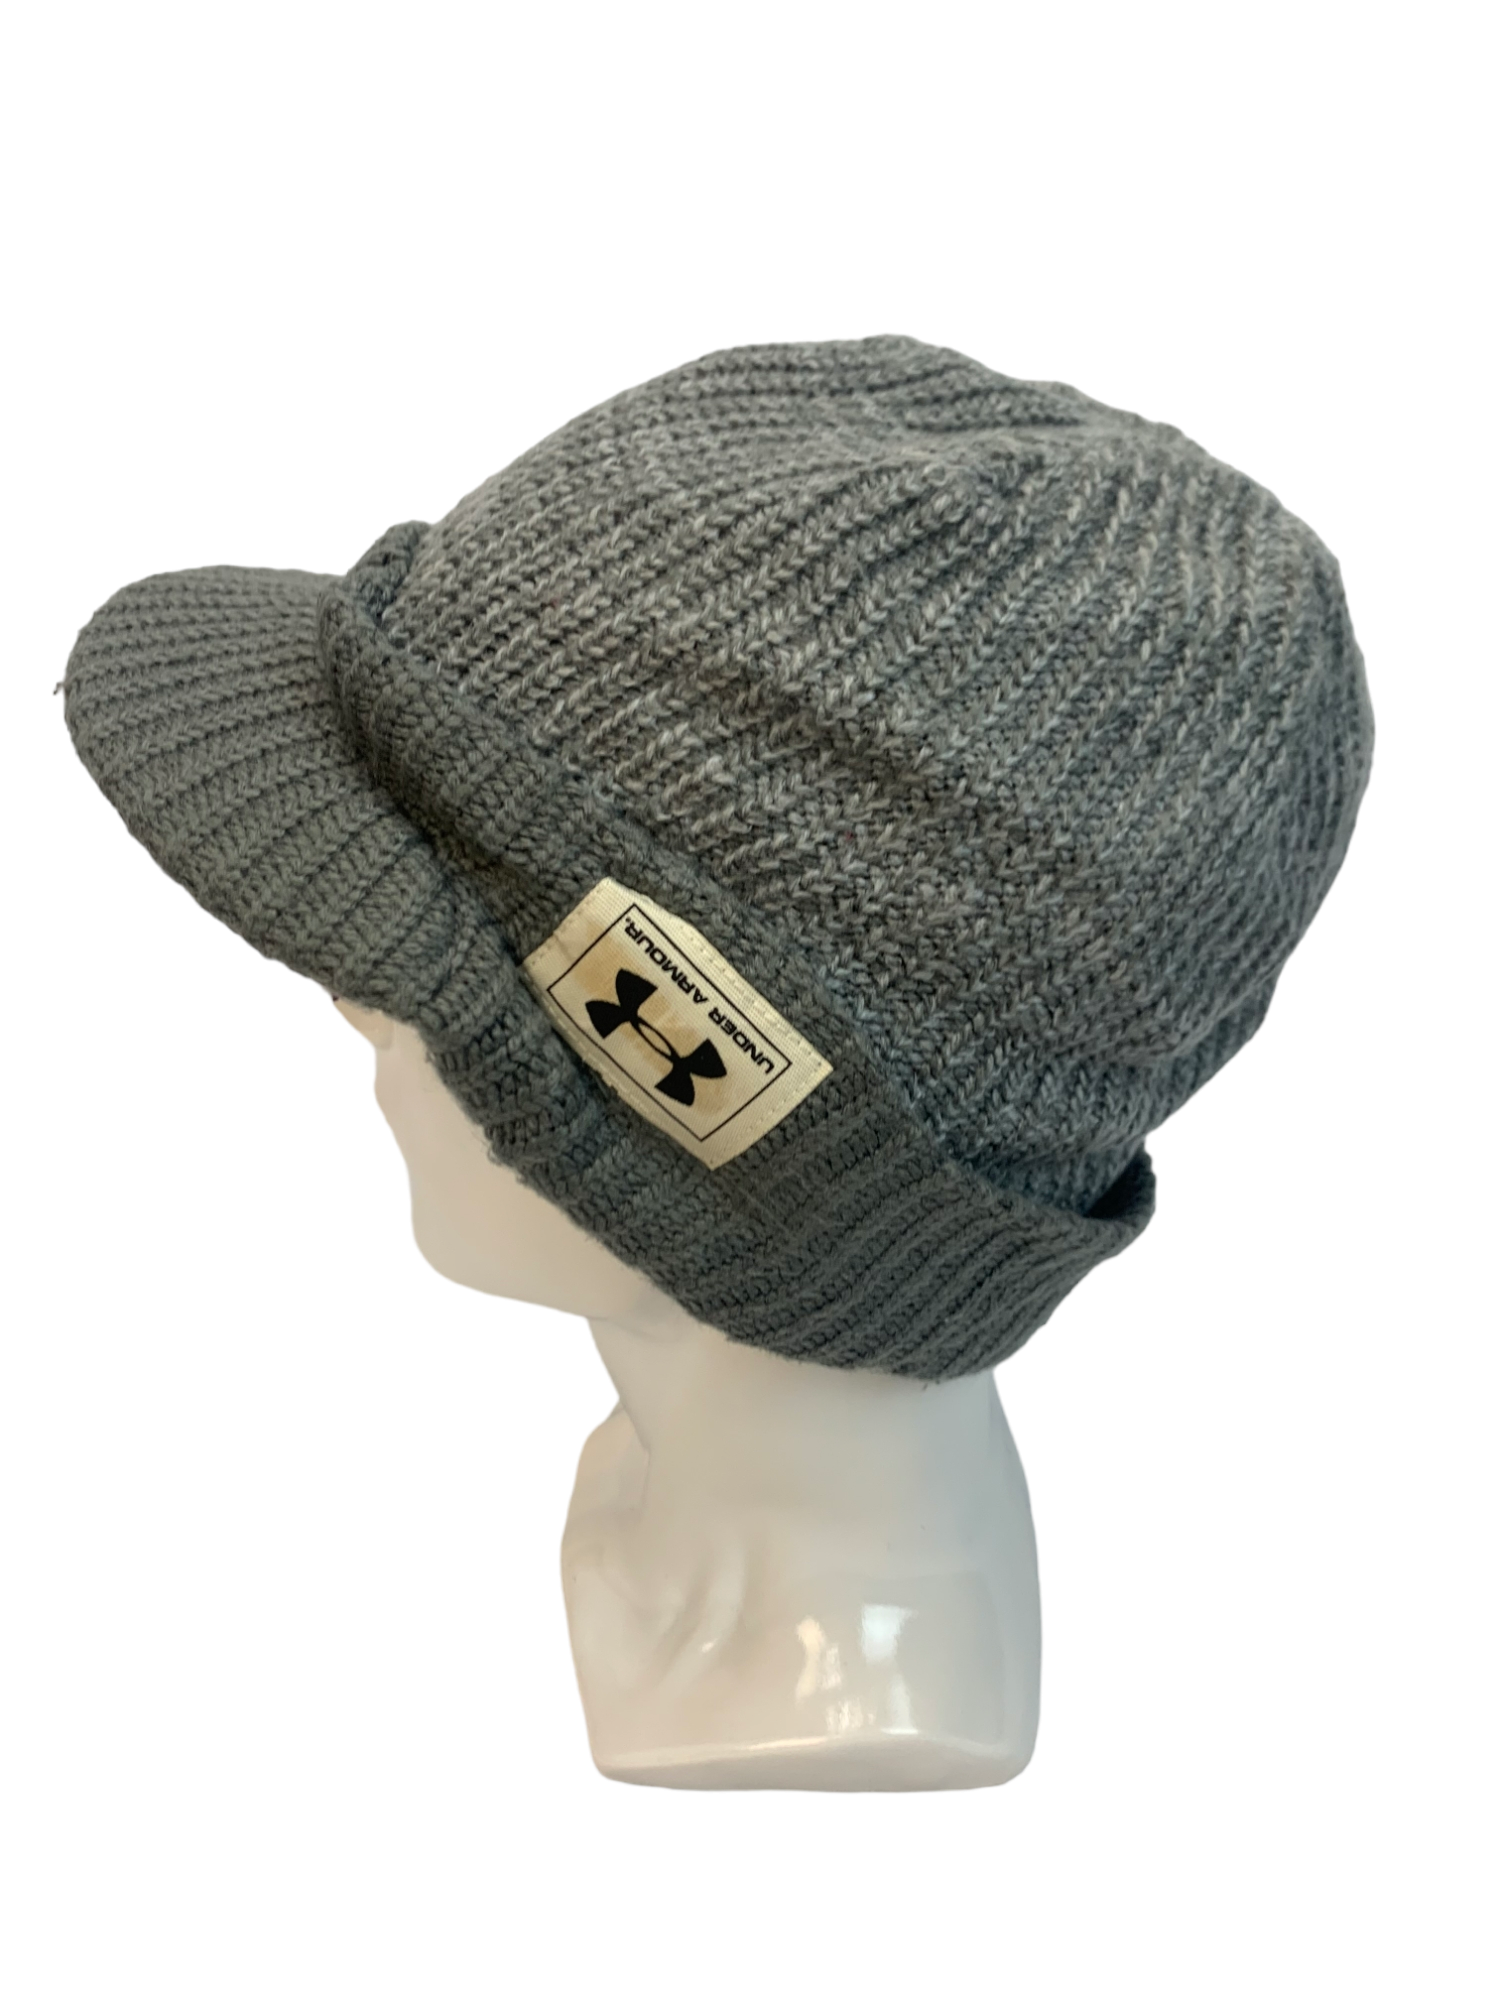 Streetwear - UNDER ARMOUR STREETWEAR BEANIE HAT CAP - 2